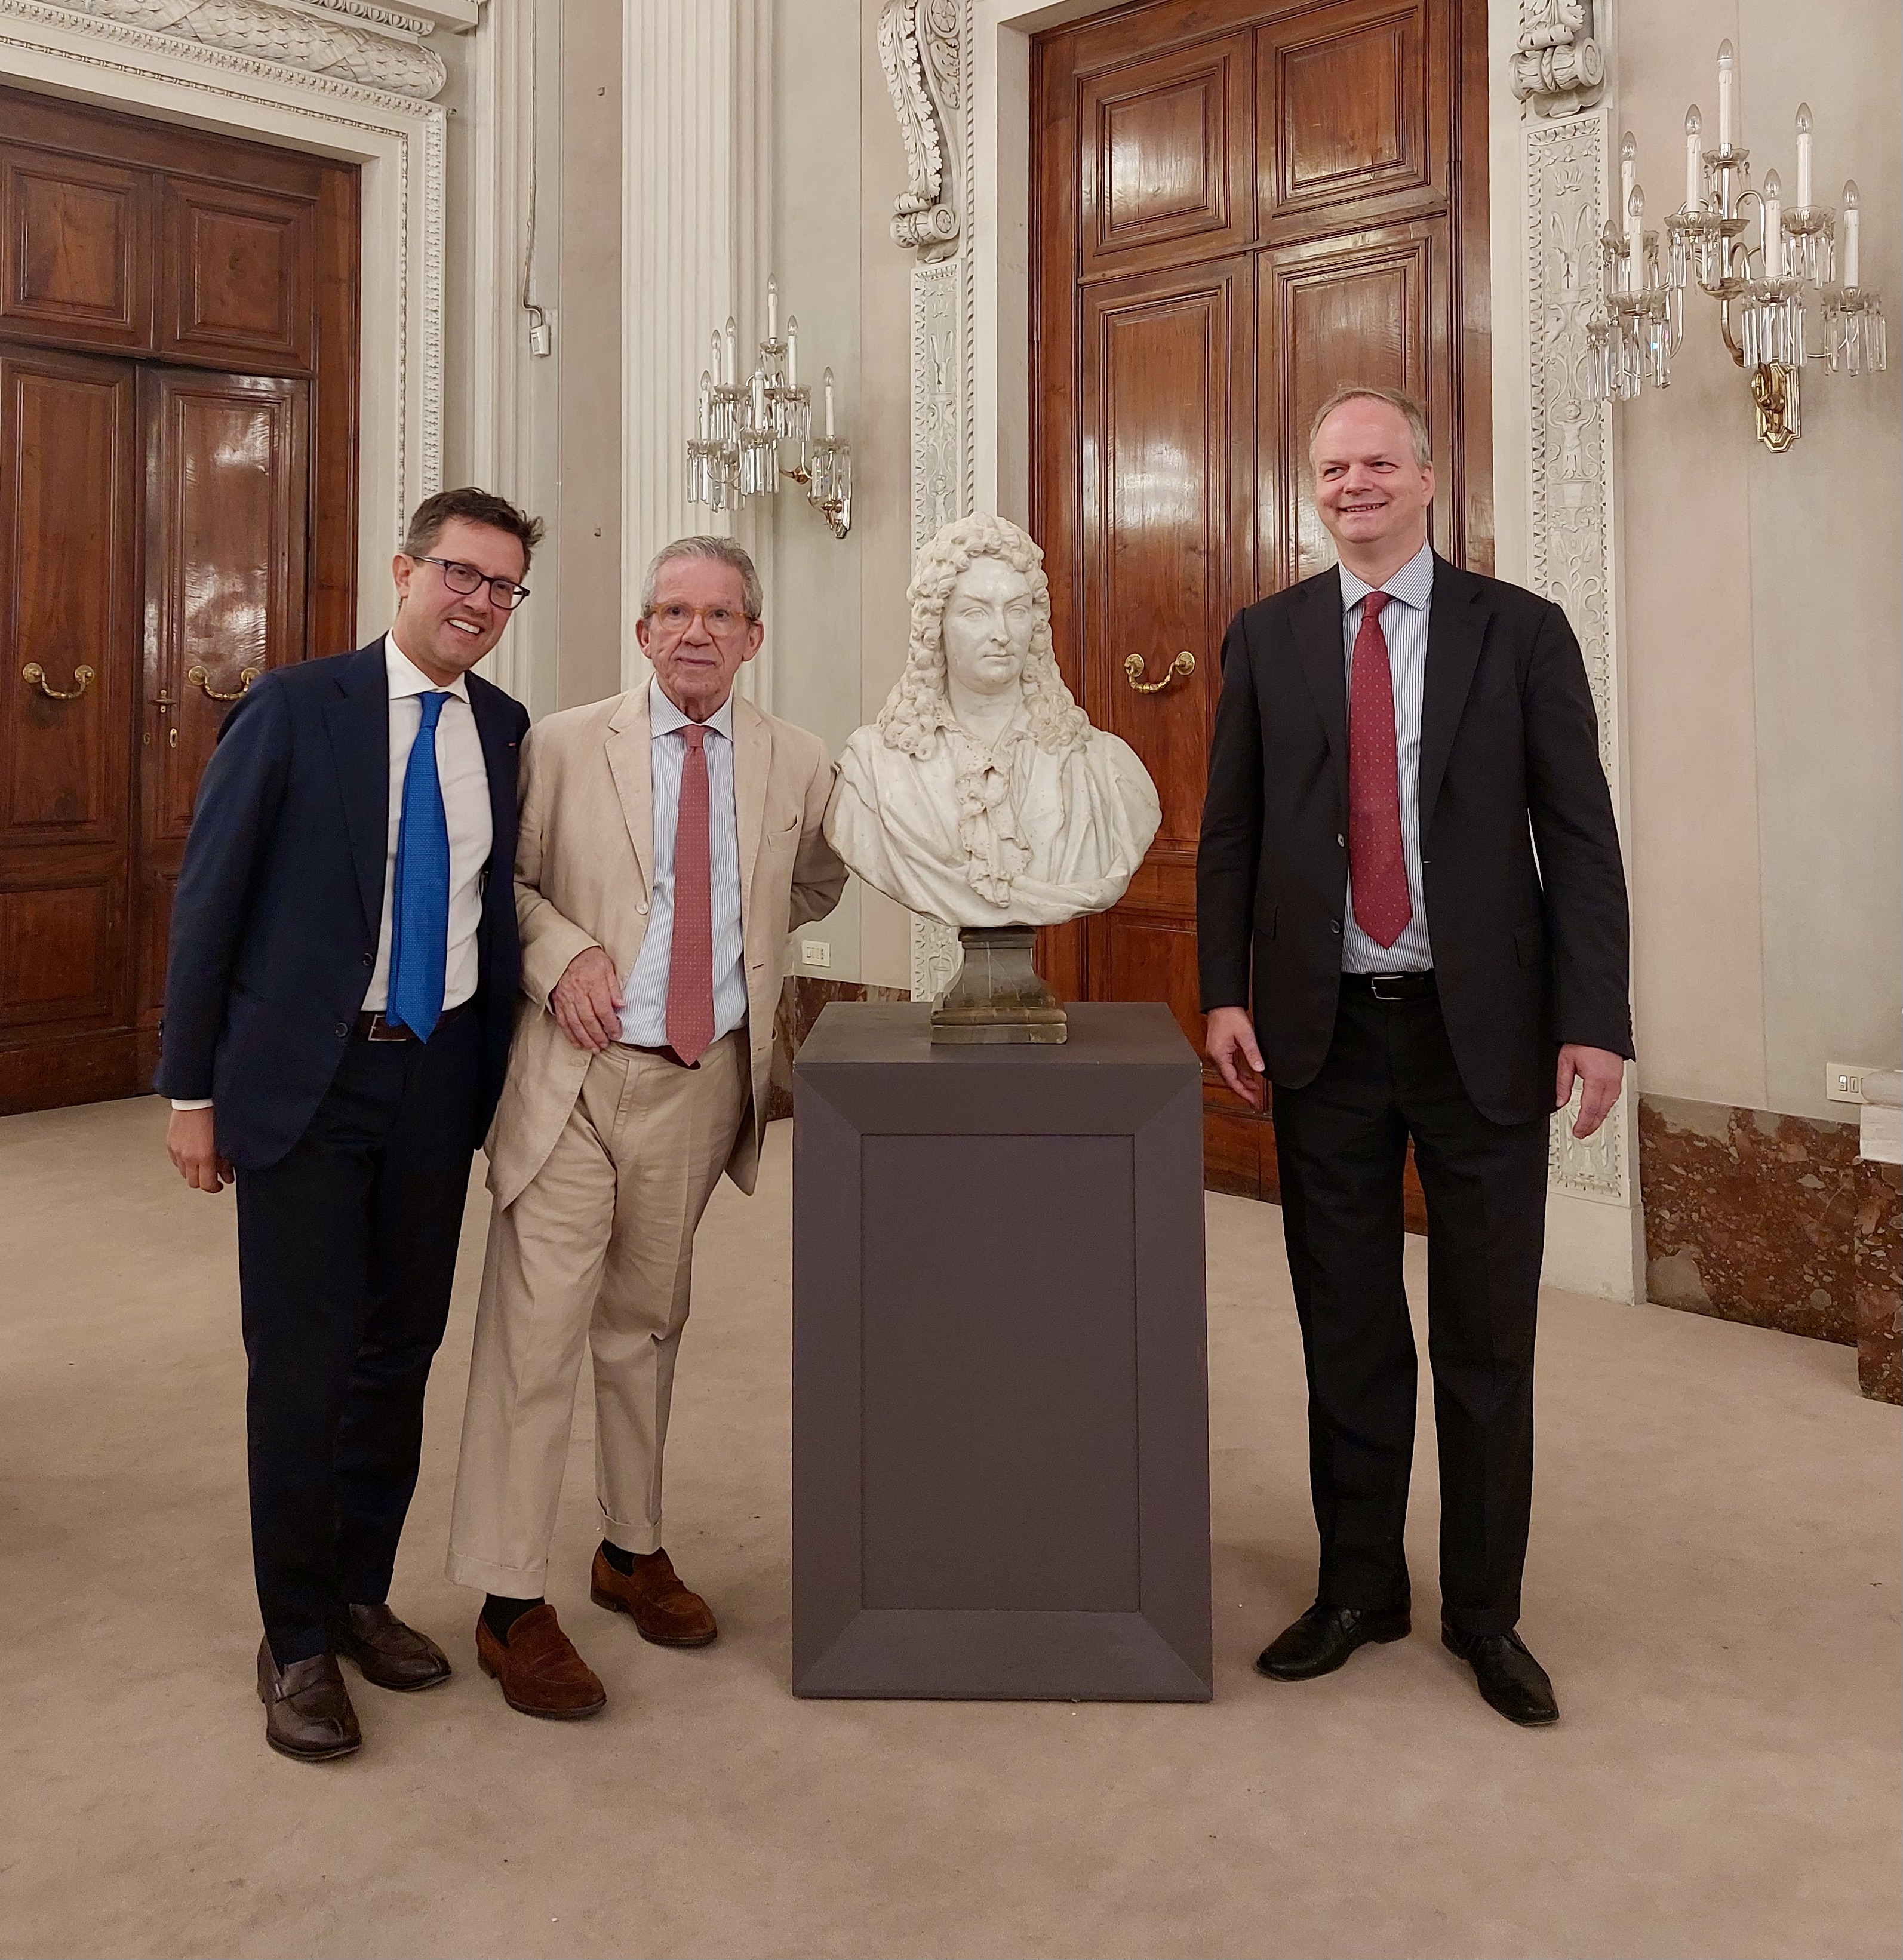 Donato alle Gallerie degli Uffizi il busto del celebre cantante fiorentino Gaetano Berenstadt, realizzato da Giovacchino Fortini